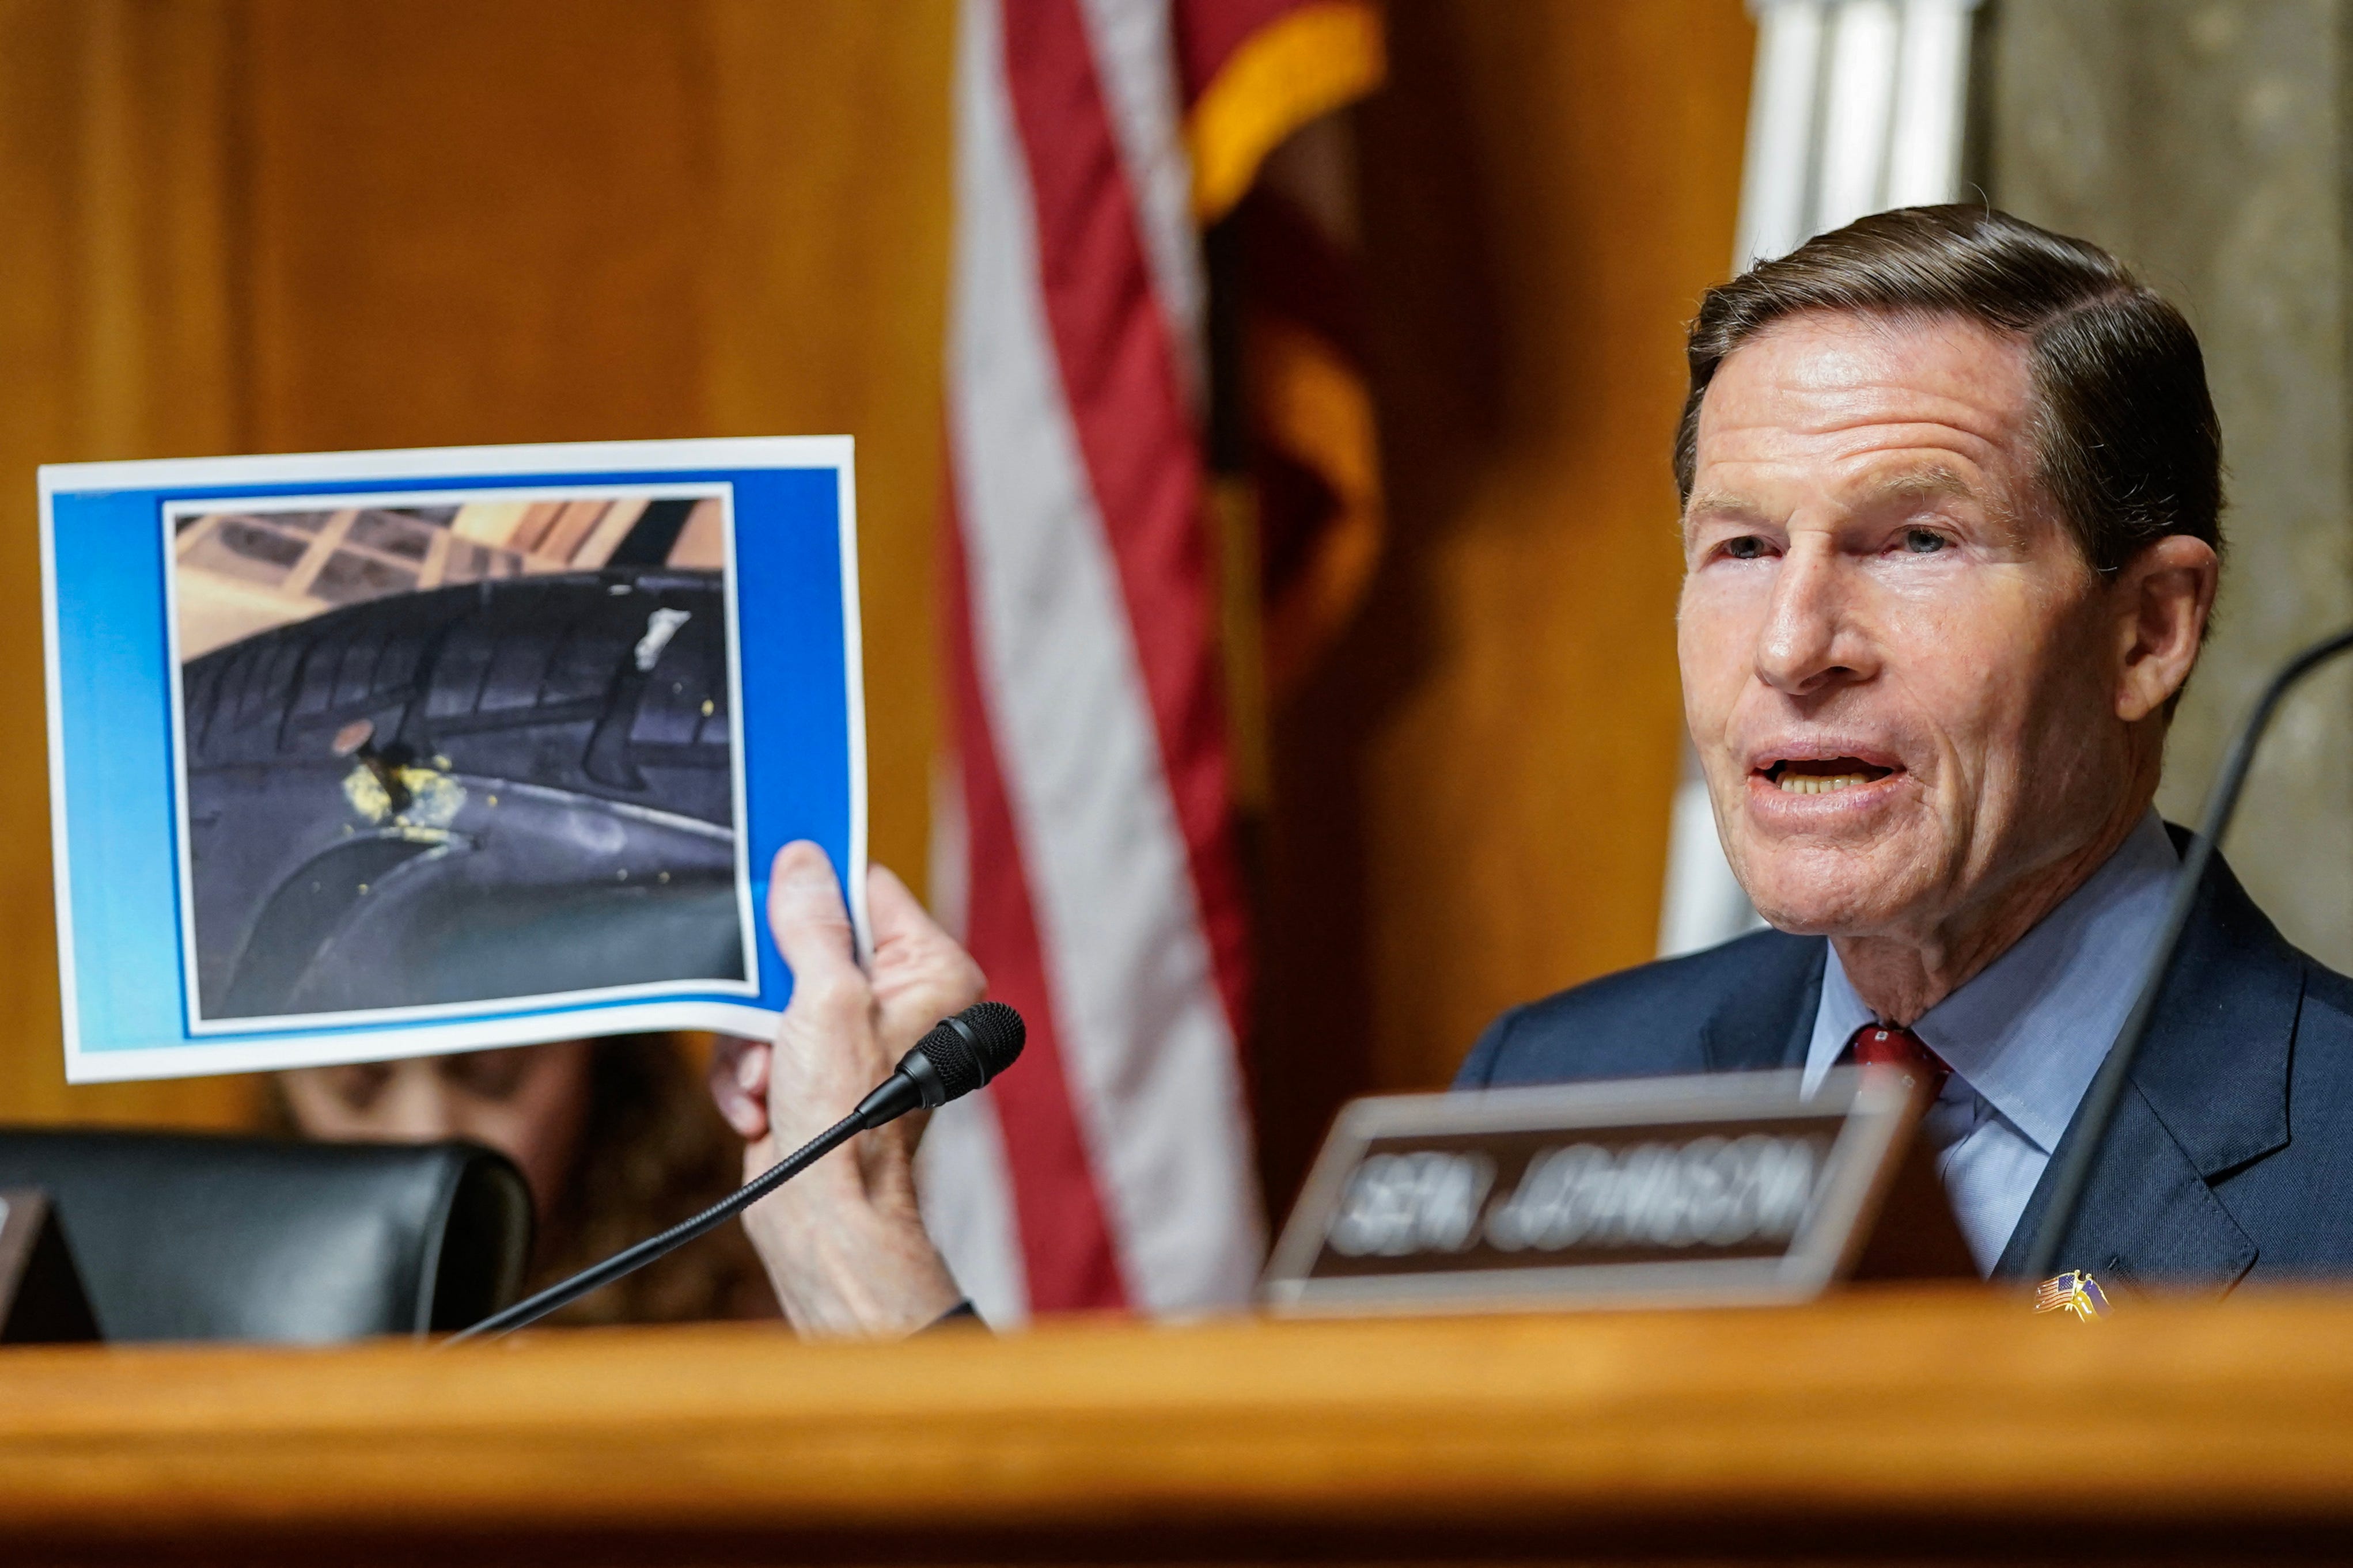 Der Vorsitzende des Ausschusses, US-Senator Richard Blumenthal, Demokrat aus Connecticut, hält ein Bild eines Nagels in einem Reifen, der laut Boeing-Ingenieur Sam Salehpour seiner Meinung nach absichtlich in seinen Autoreifen gesteckt wurde, als Vergeltung dafür, dass er ein Whistleblower war.